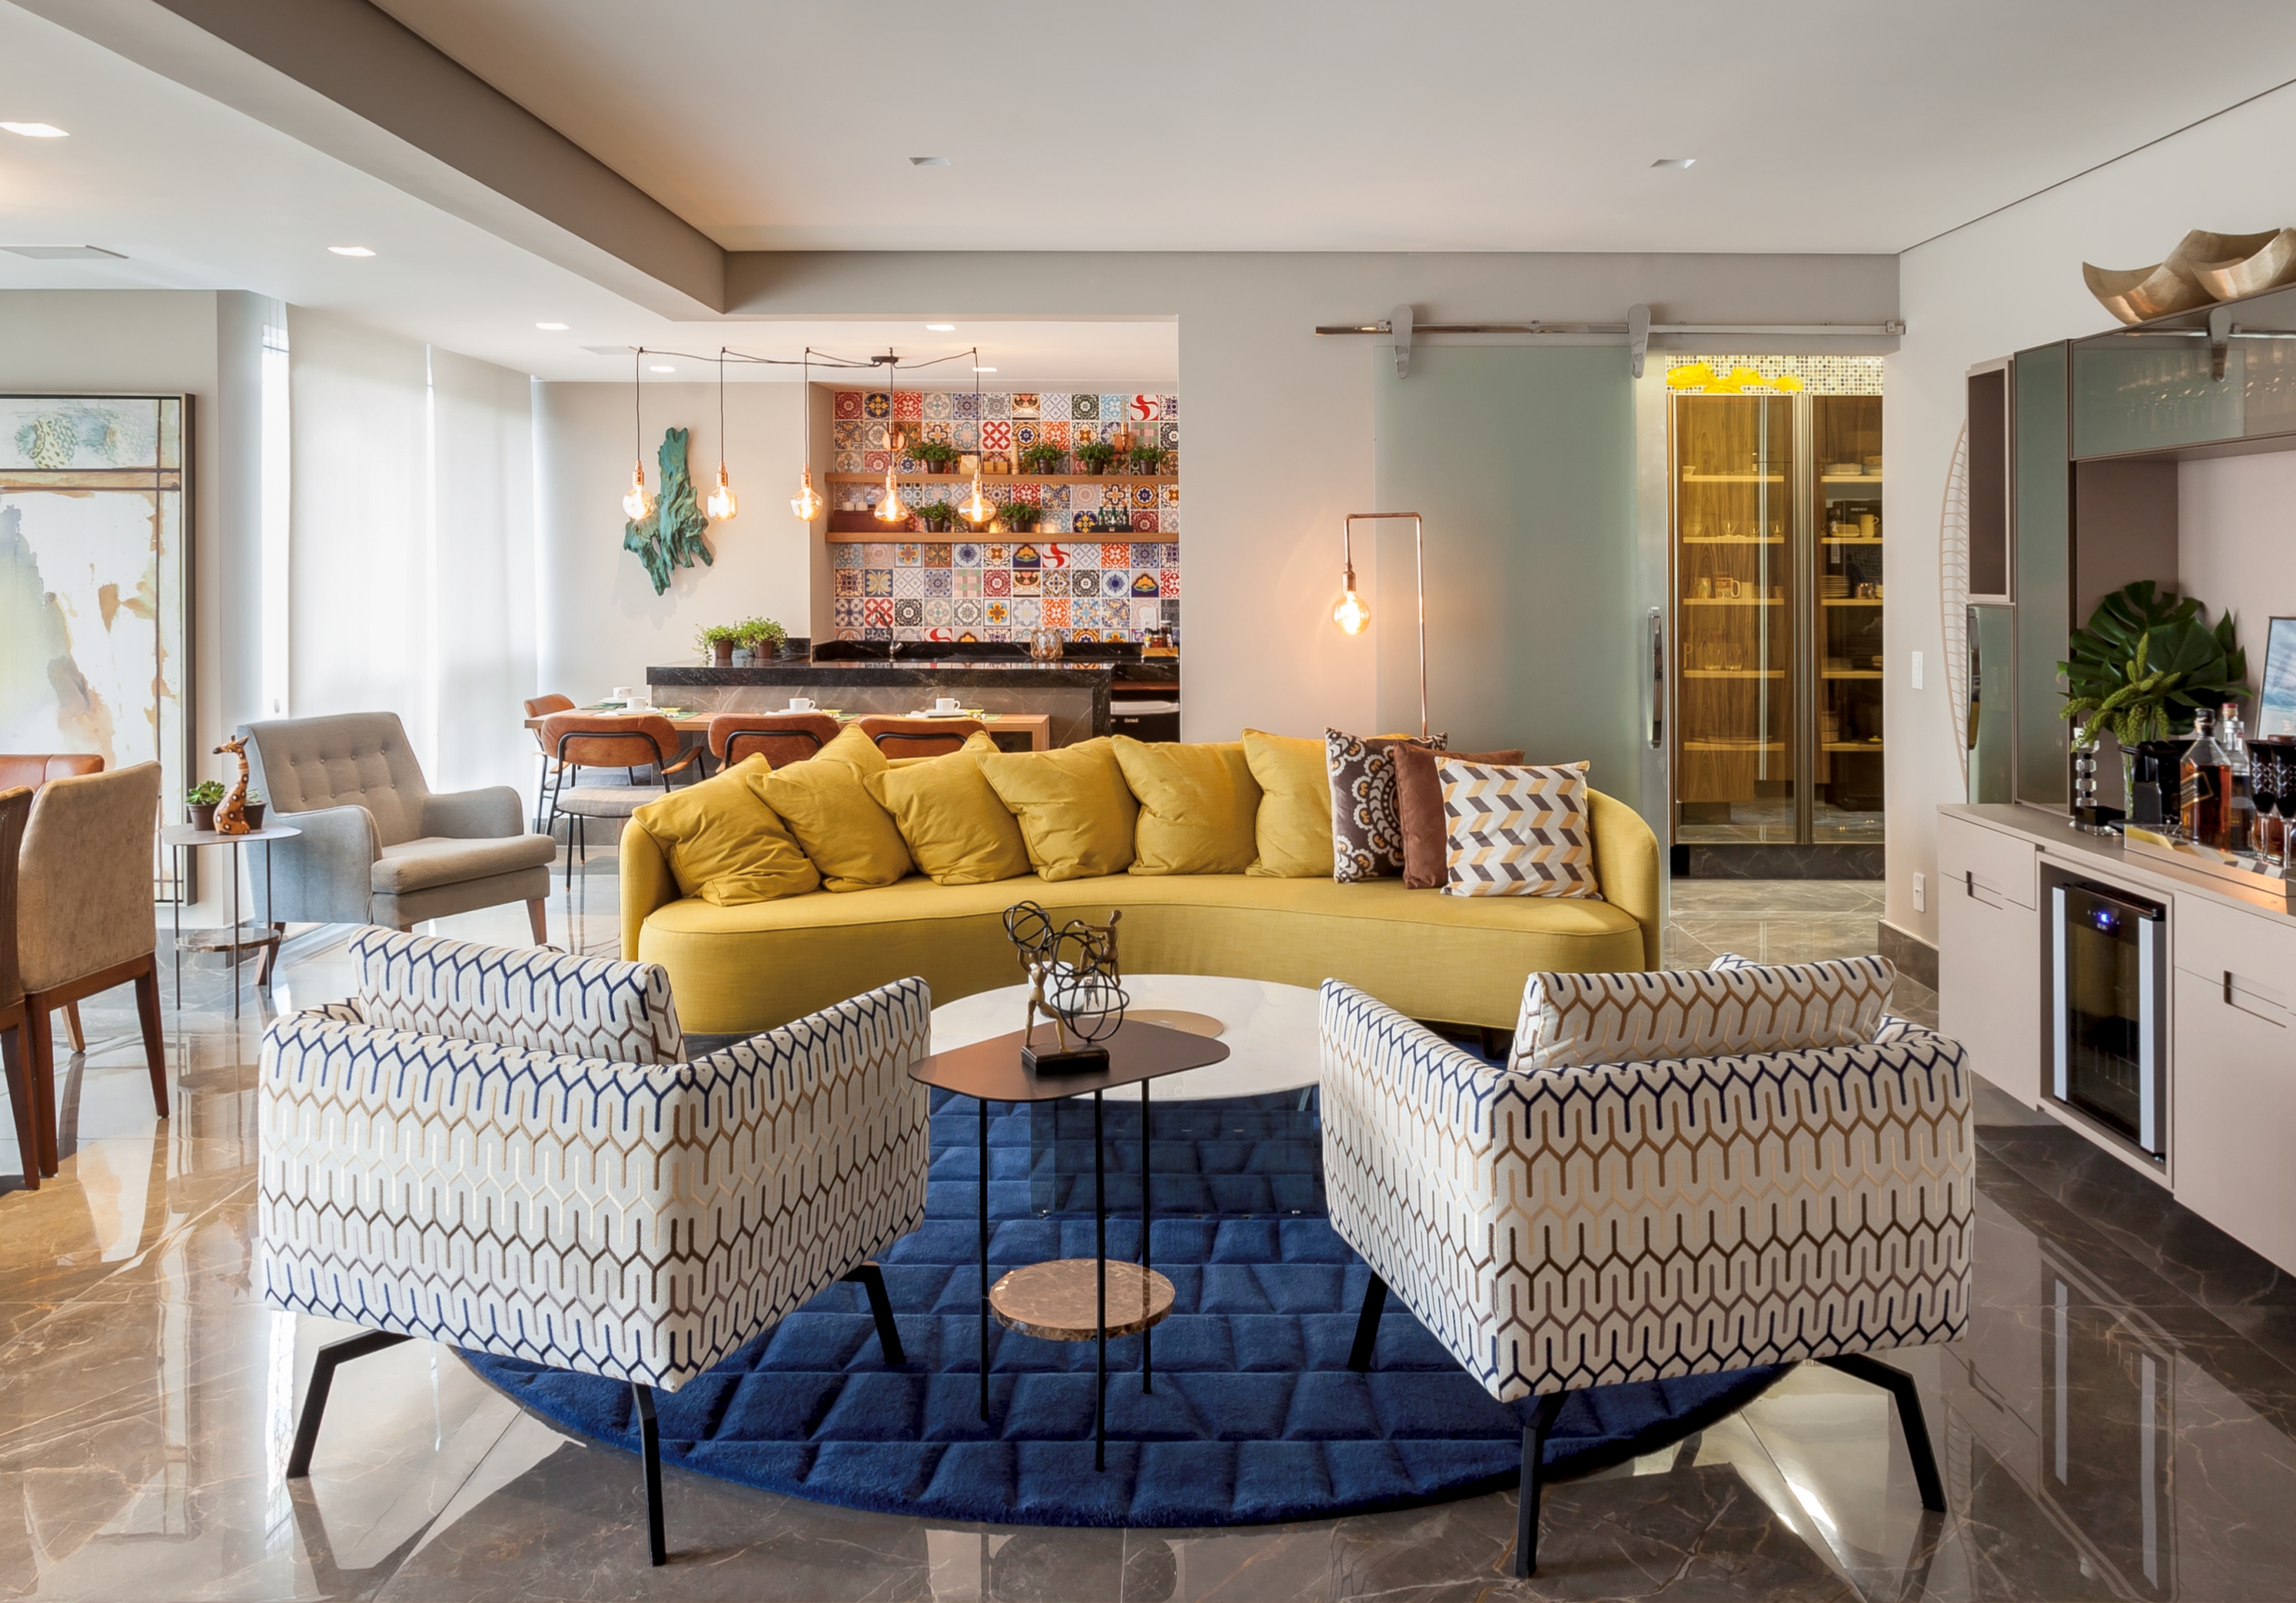 Sala com poltronas branca personalizada com desenhos geométricos coloridos, sofá curvo amarelo e tapete azul, paredes brancas e mesinha de centro redonda branca.